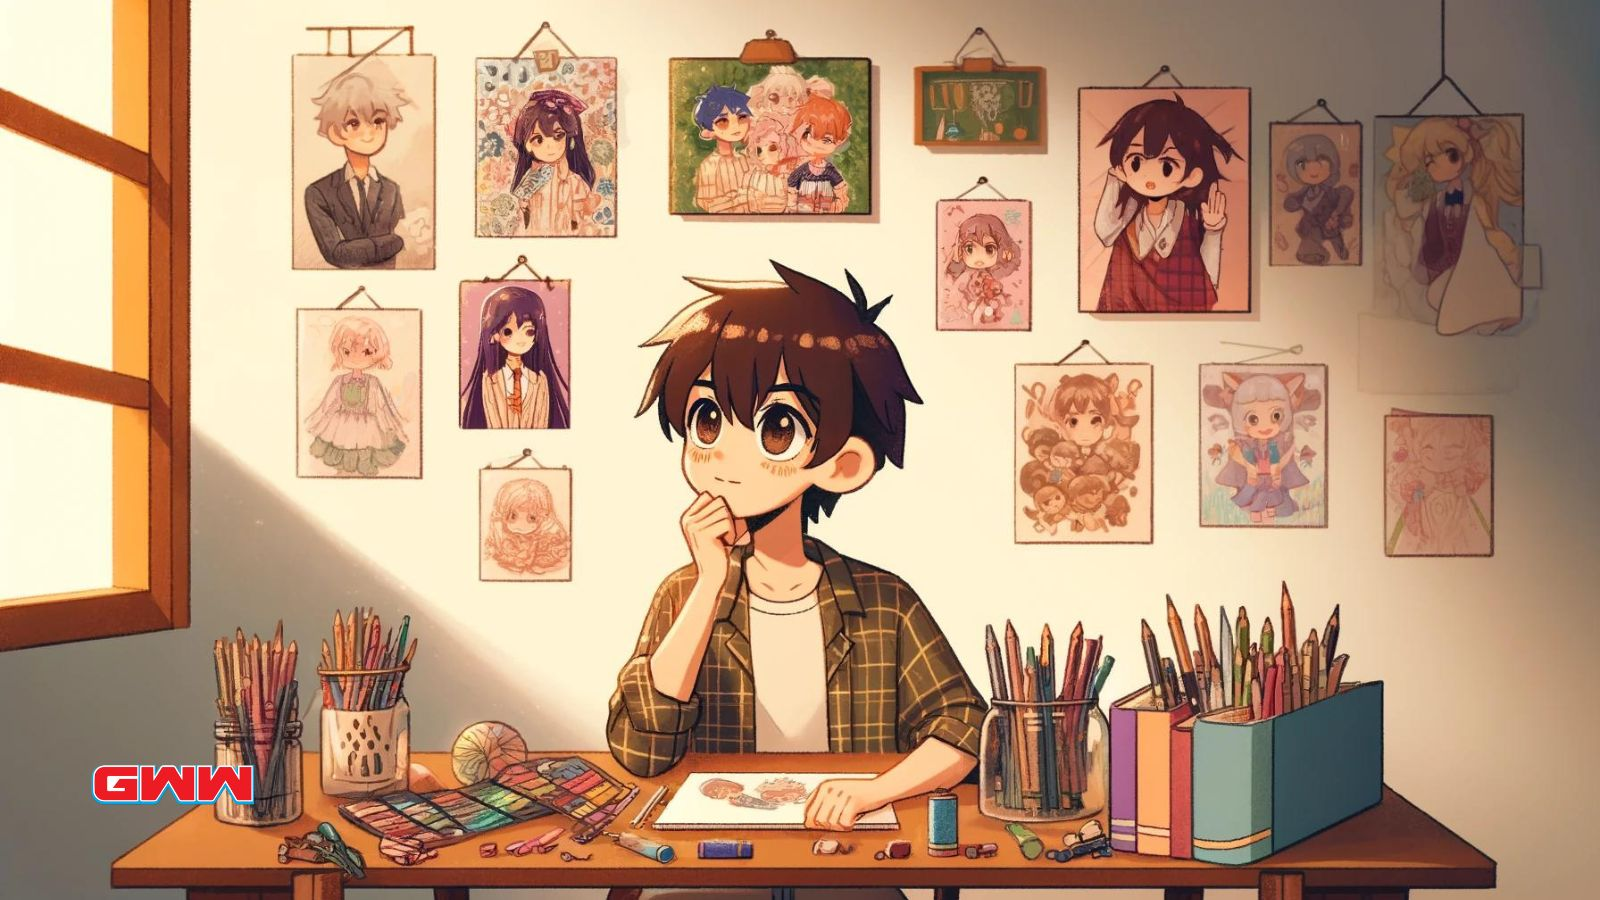 Young artist pondering among anime art supplies